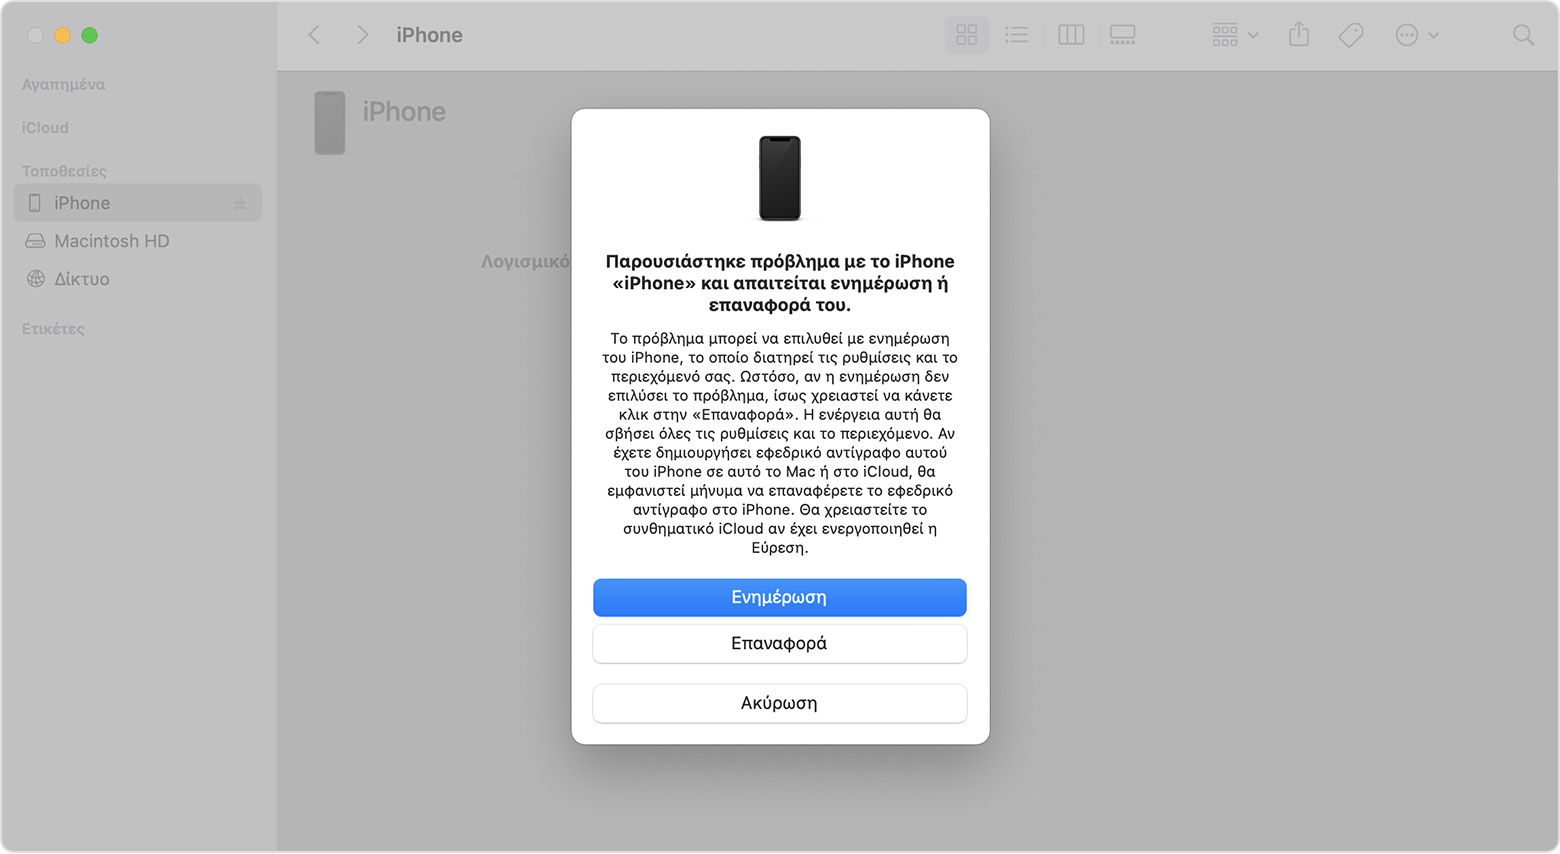 Παράθυρο του Finder σε ένα Mac που εμφανίζει επιλογές για επαναφορά ή ενημέρωση του iPhone